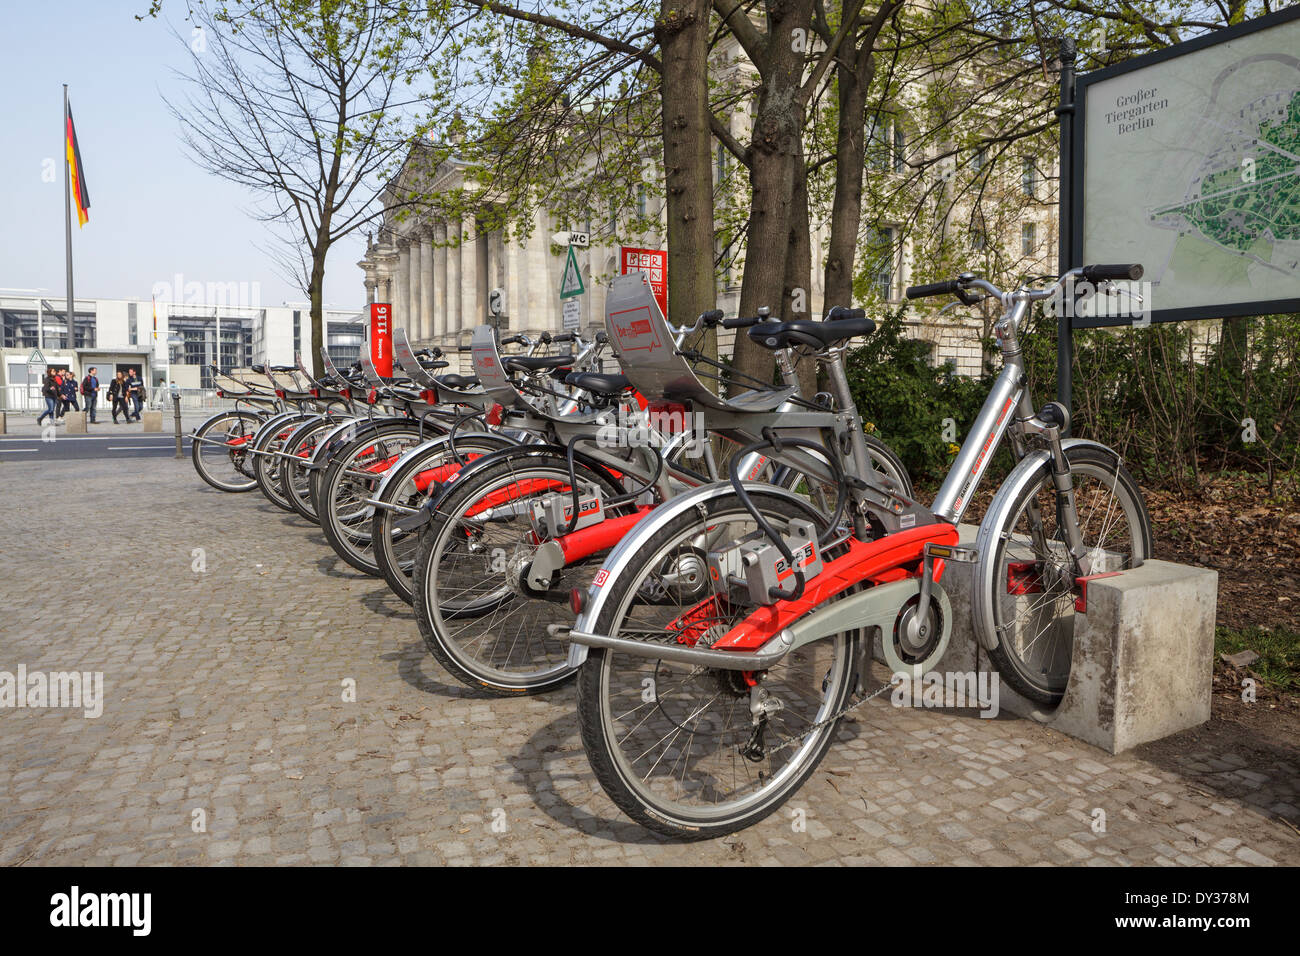 Call a Bike, Deutsche Bahn rental scheme bikes by the Tier Garden and Reichstag, Berlin, Germany Stock Photo